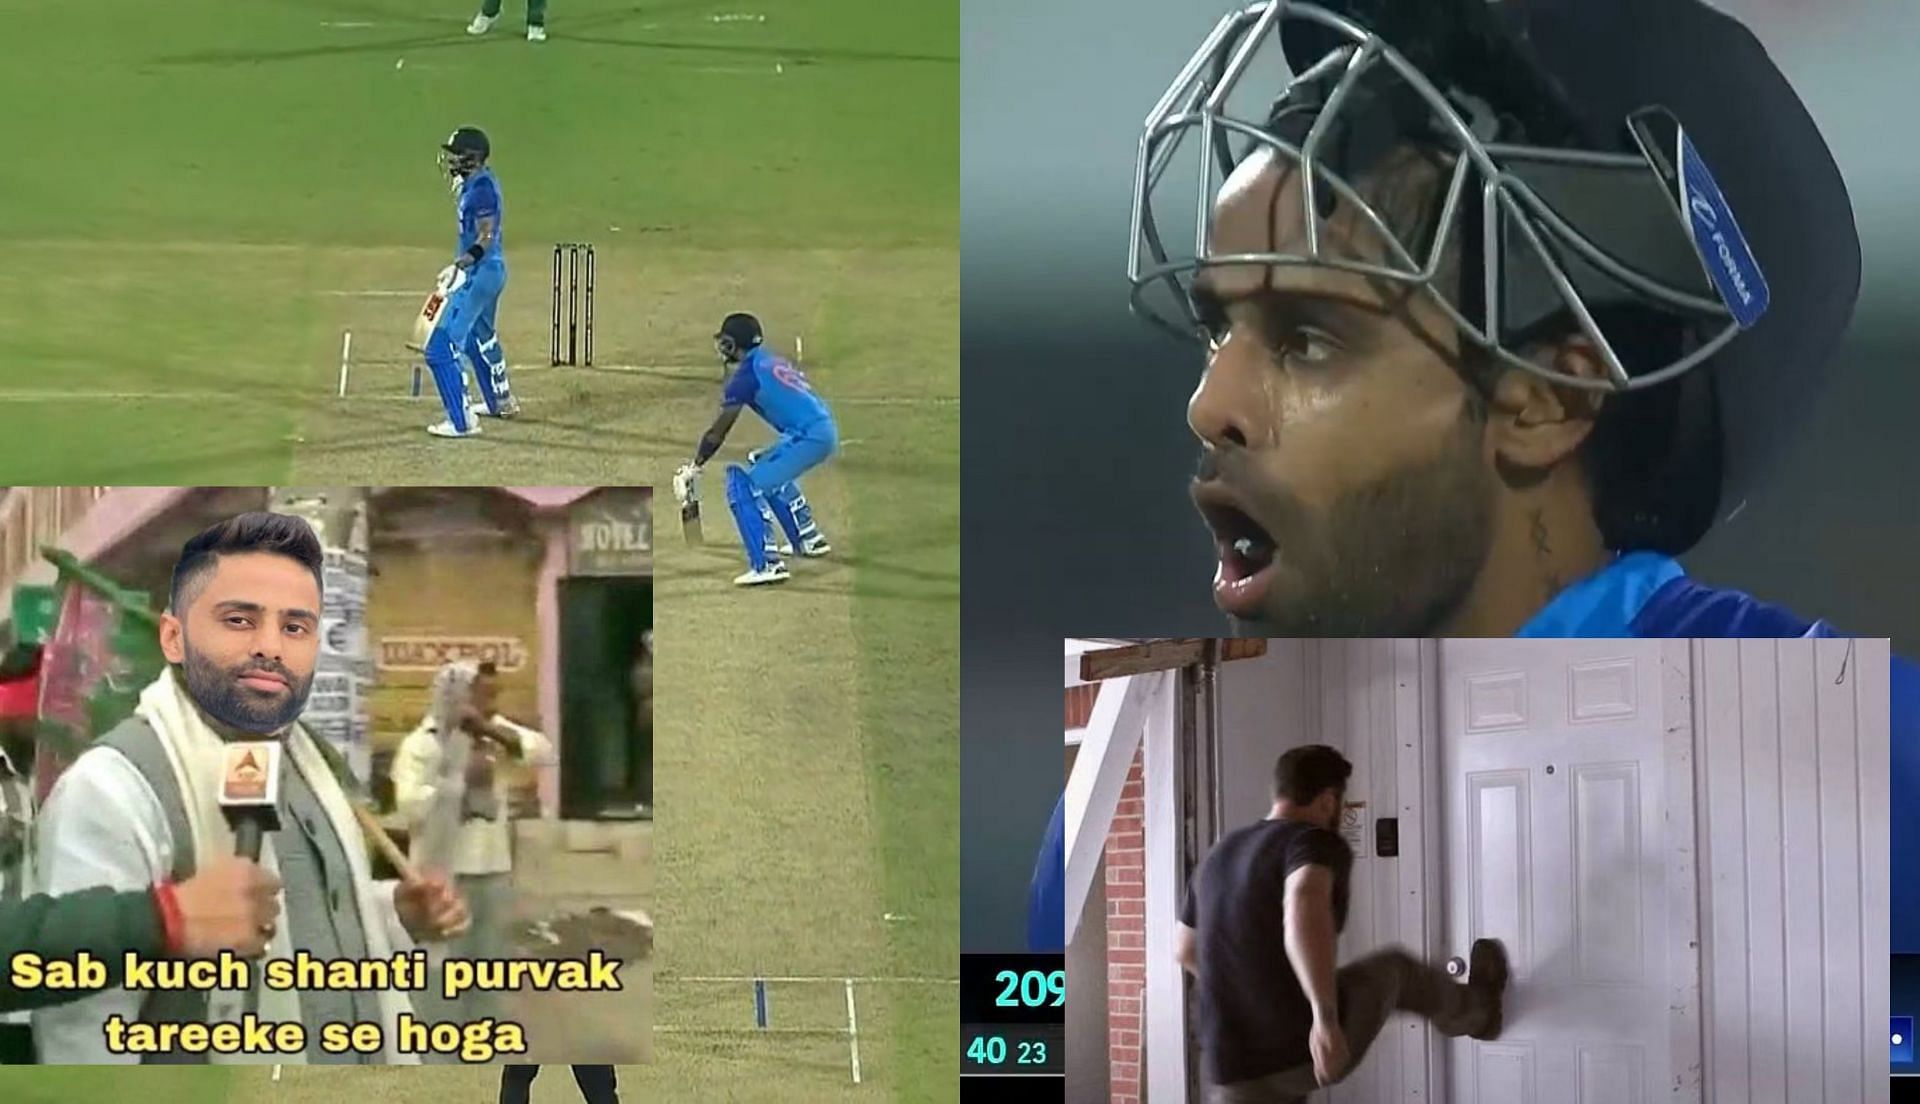 IND vs SA 2022: Top 10 funny memes after Suryakumar Yadav's